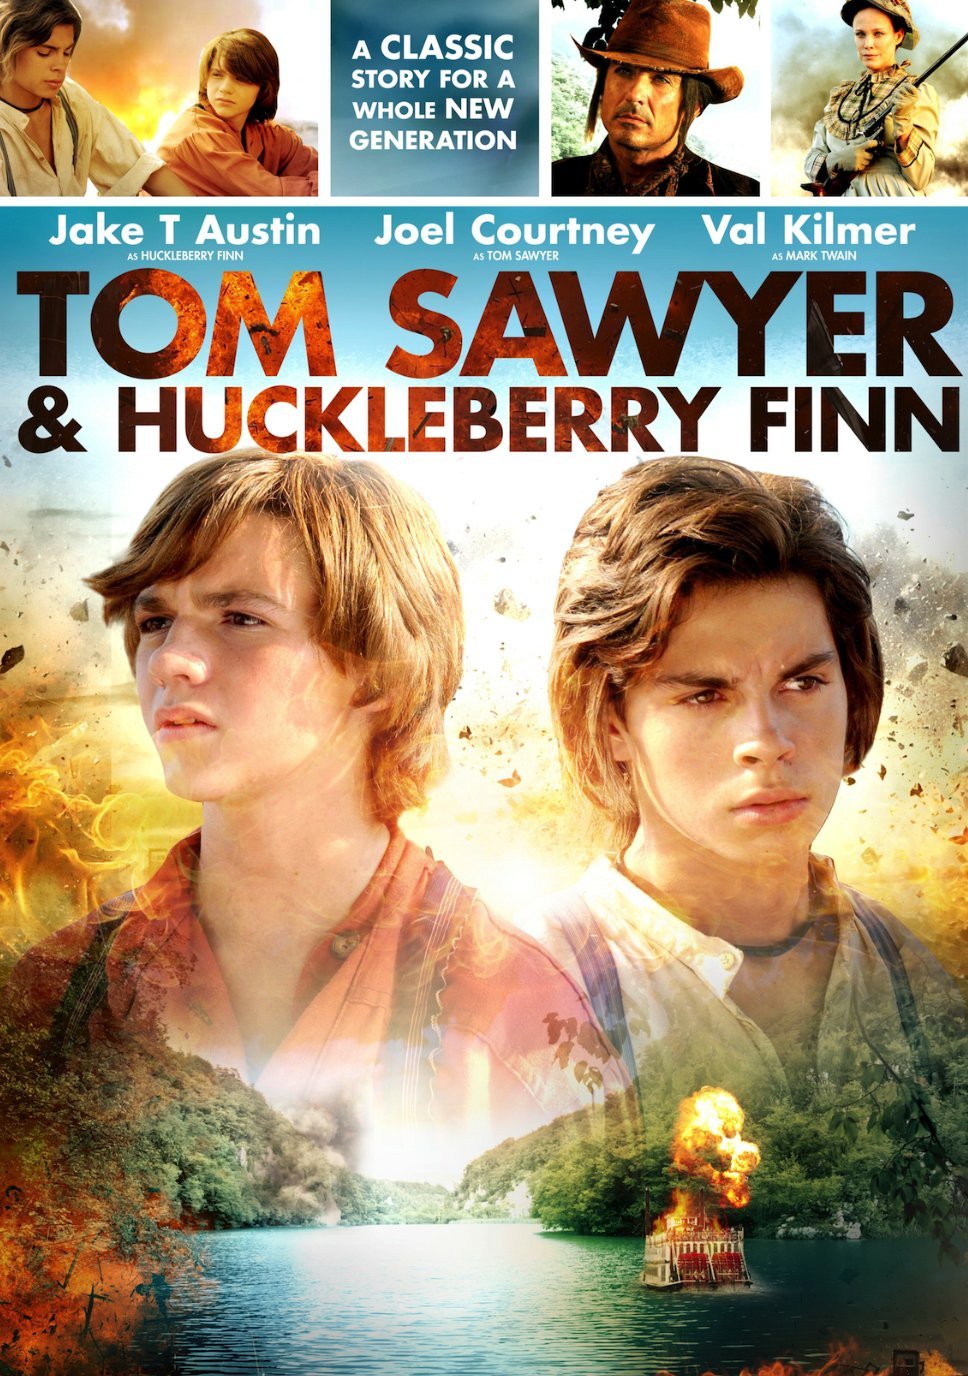 Tom Sawyer & Huckleberry Finn (2014) Screenshot 1 